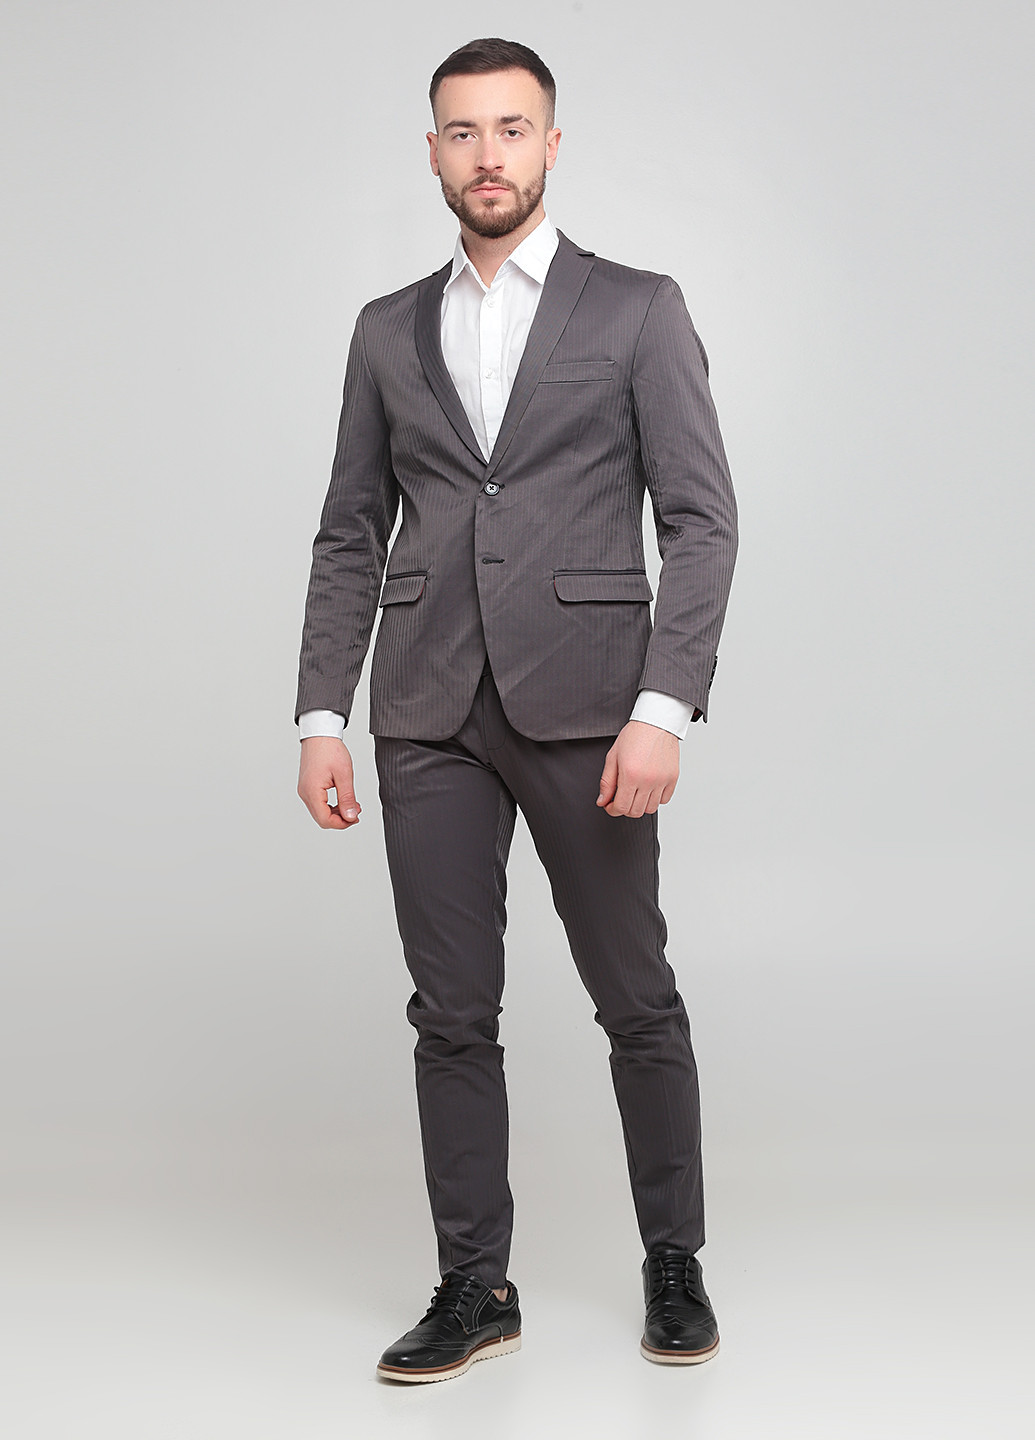 Серый демисезонный костюм (пиджак, брюки) брючный Moscanueva